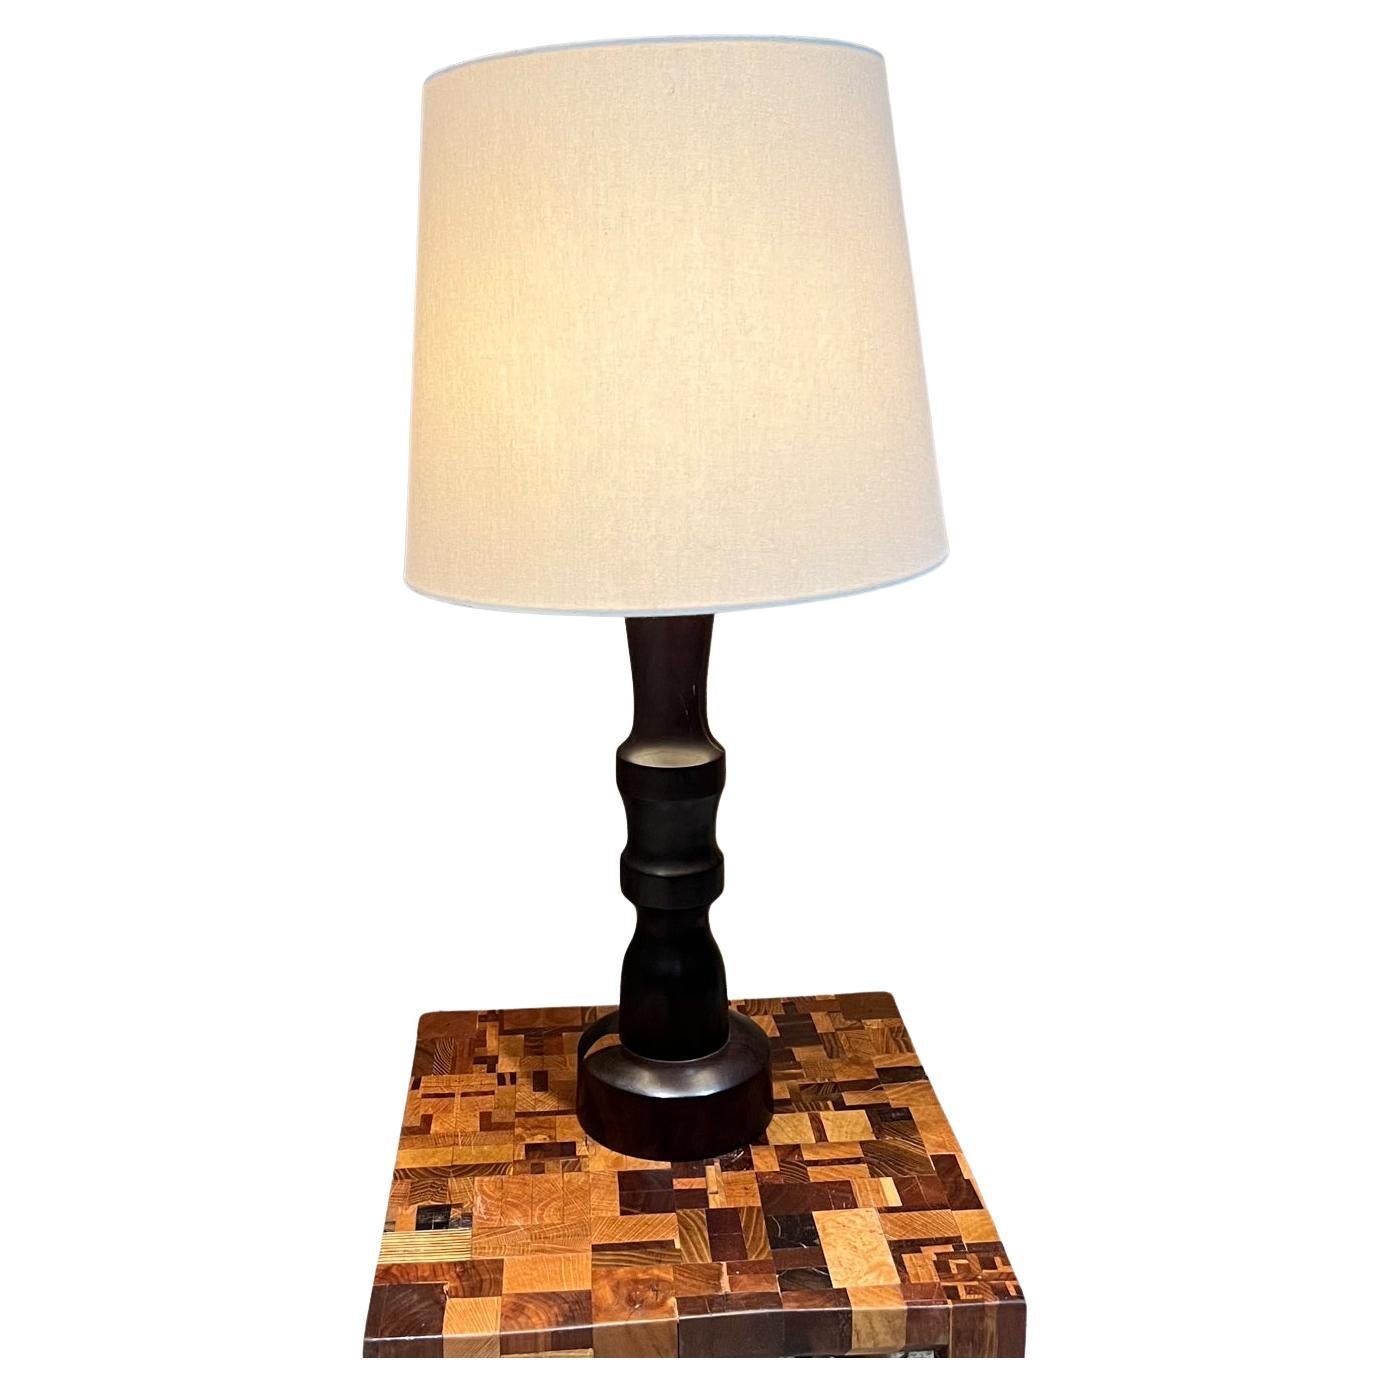 Lampe de table sculpturale à fuseau des années 1950 en bois de fer du désert mexicain Palo Fierro